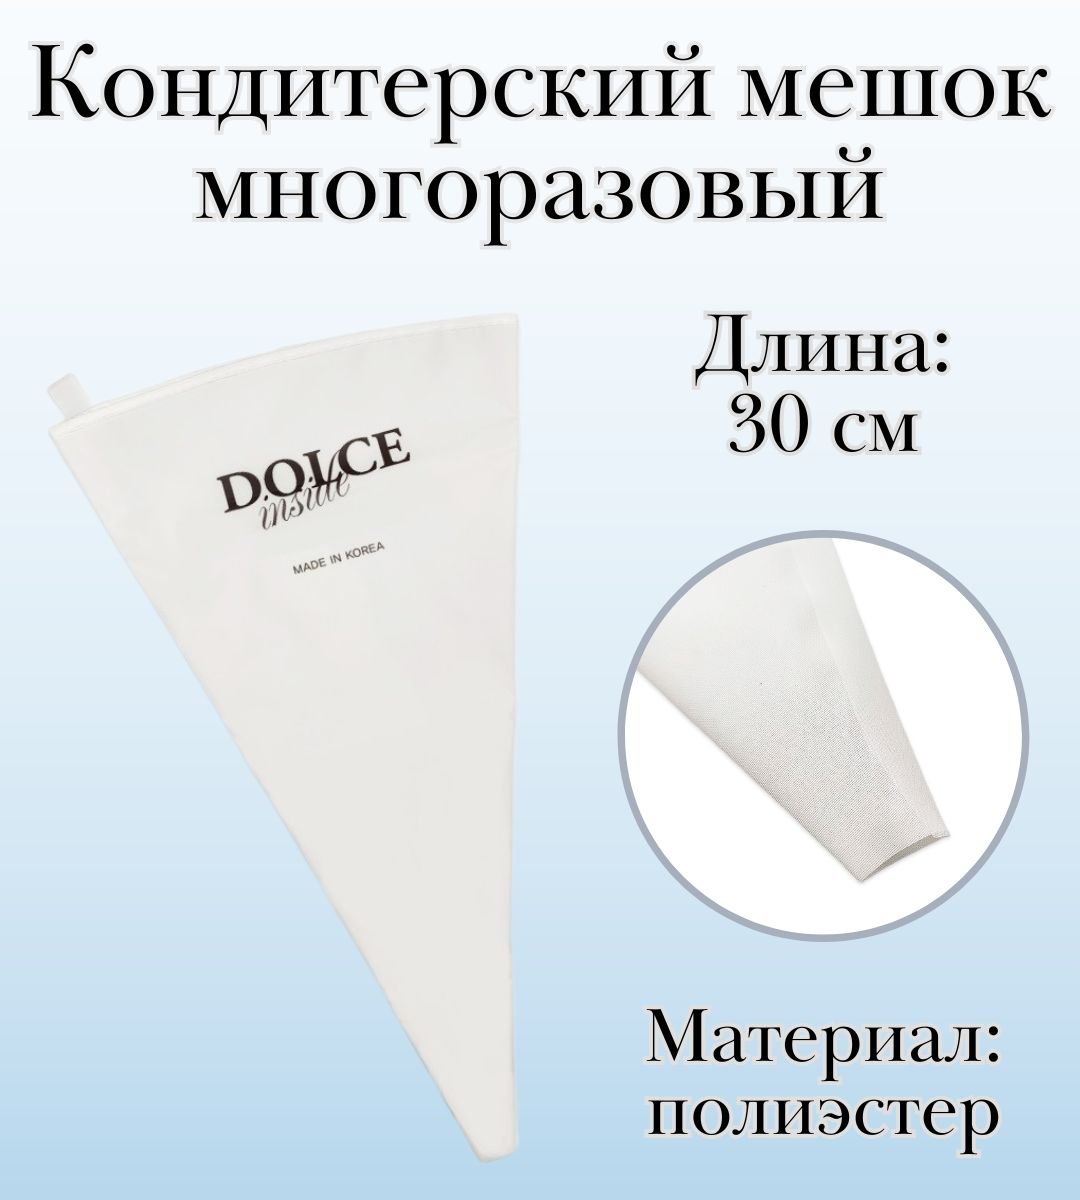 Мешок кондитерский многоразовый Dolce Inside, L=30 см